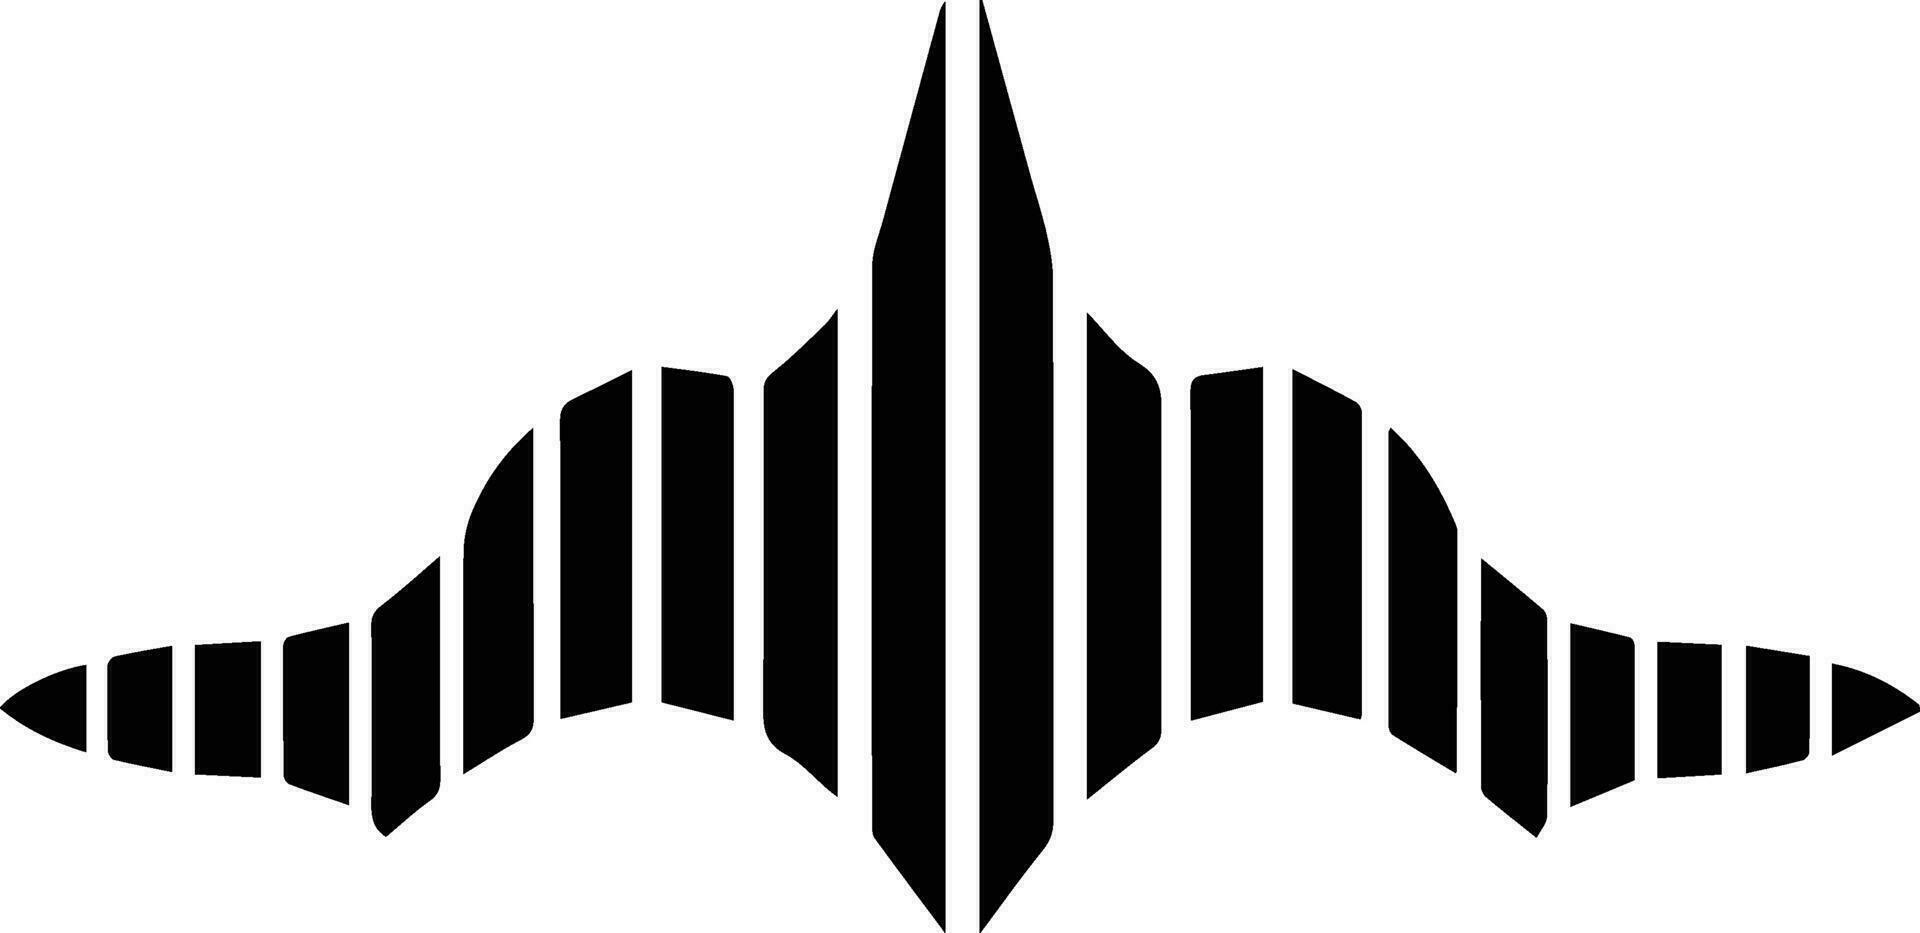 Klang Wellen oder Musik- Logo im eben Linie Kunst Stil vektor